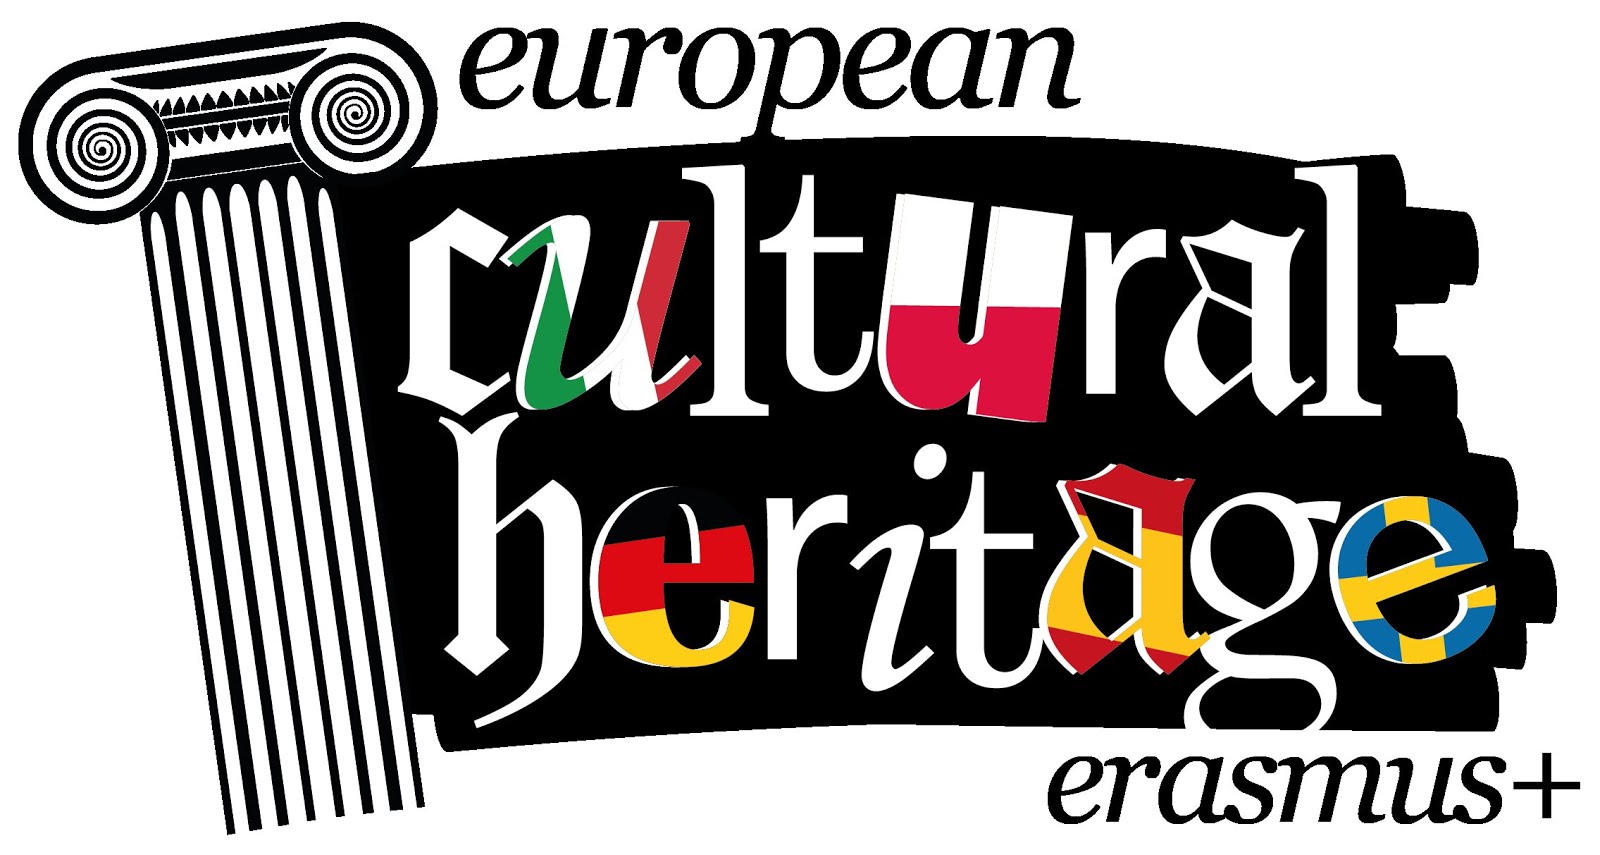 Cultural Heritage Erasmus+